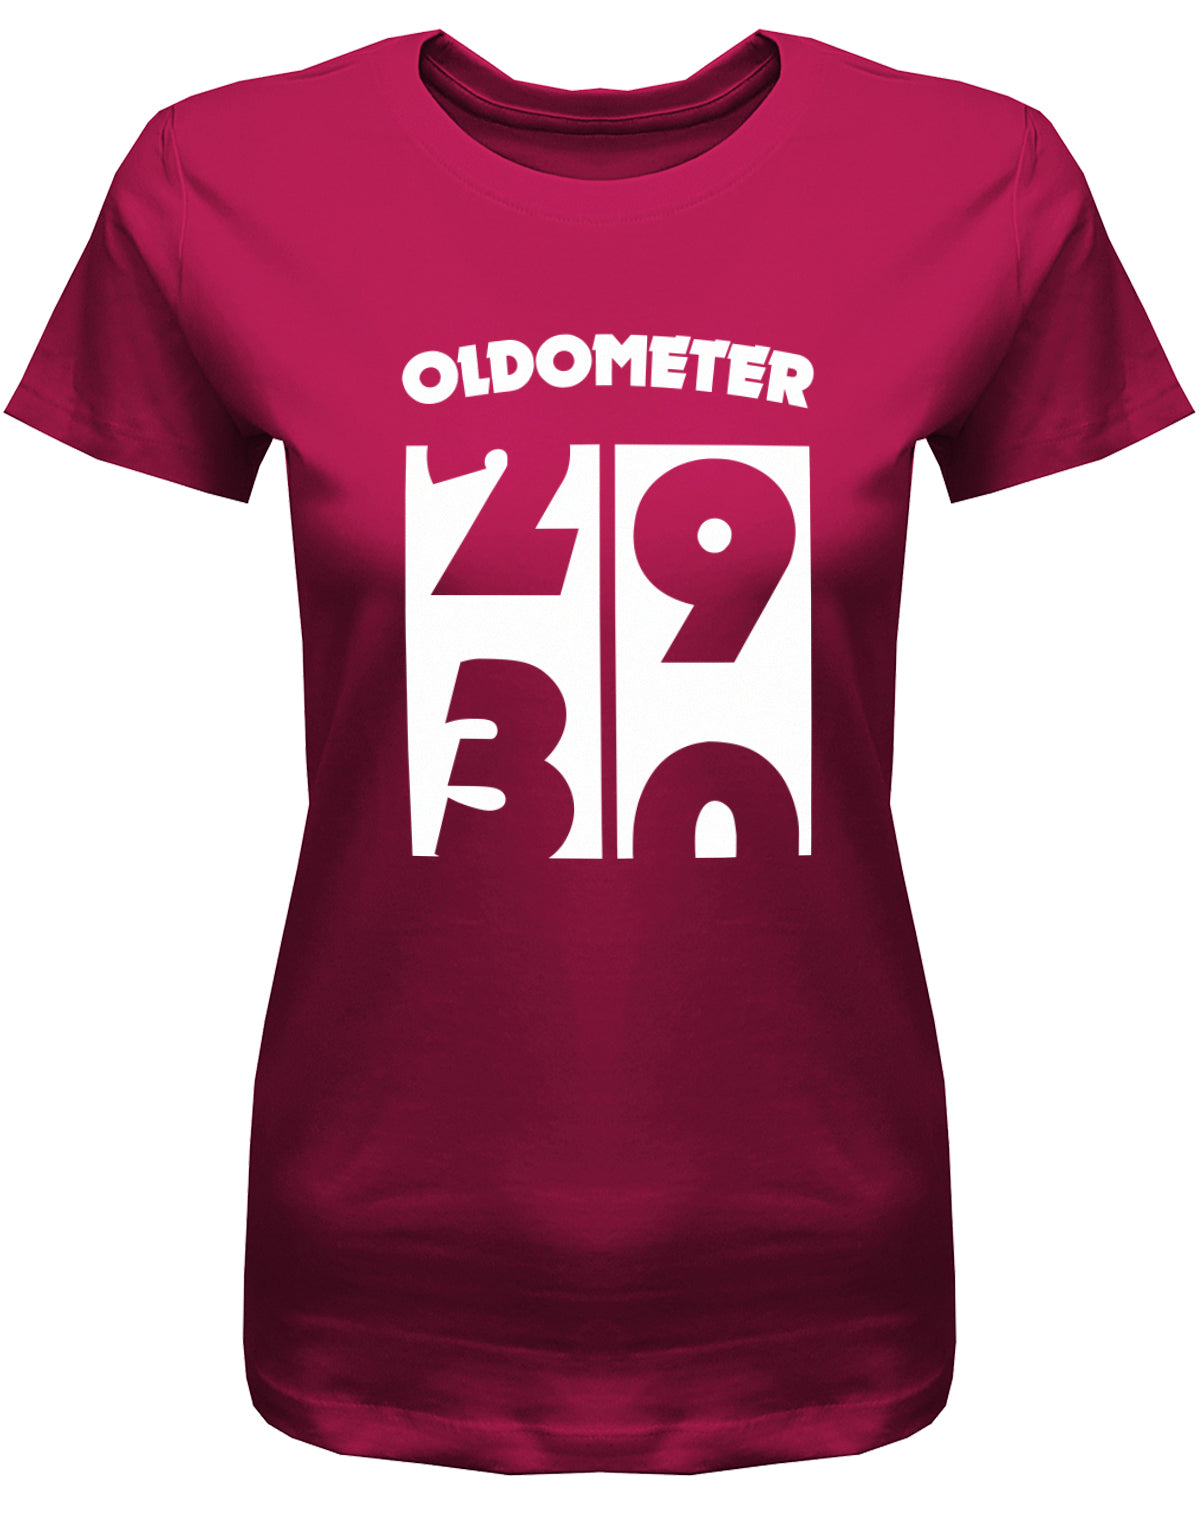 Lustiges T-Shirt zum 30. Geburtstag für die Frau Bedruckt mit Oldometer. Wechsel von 29 auf 30 Jahren. Sorbet